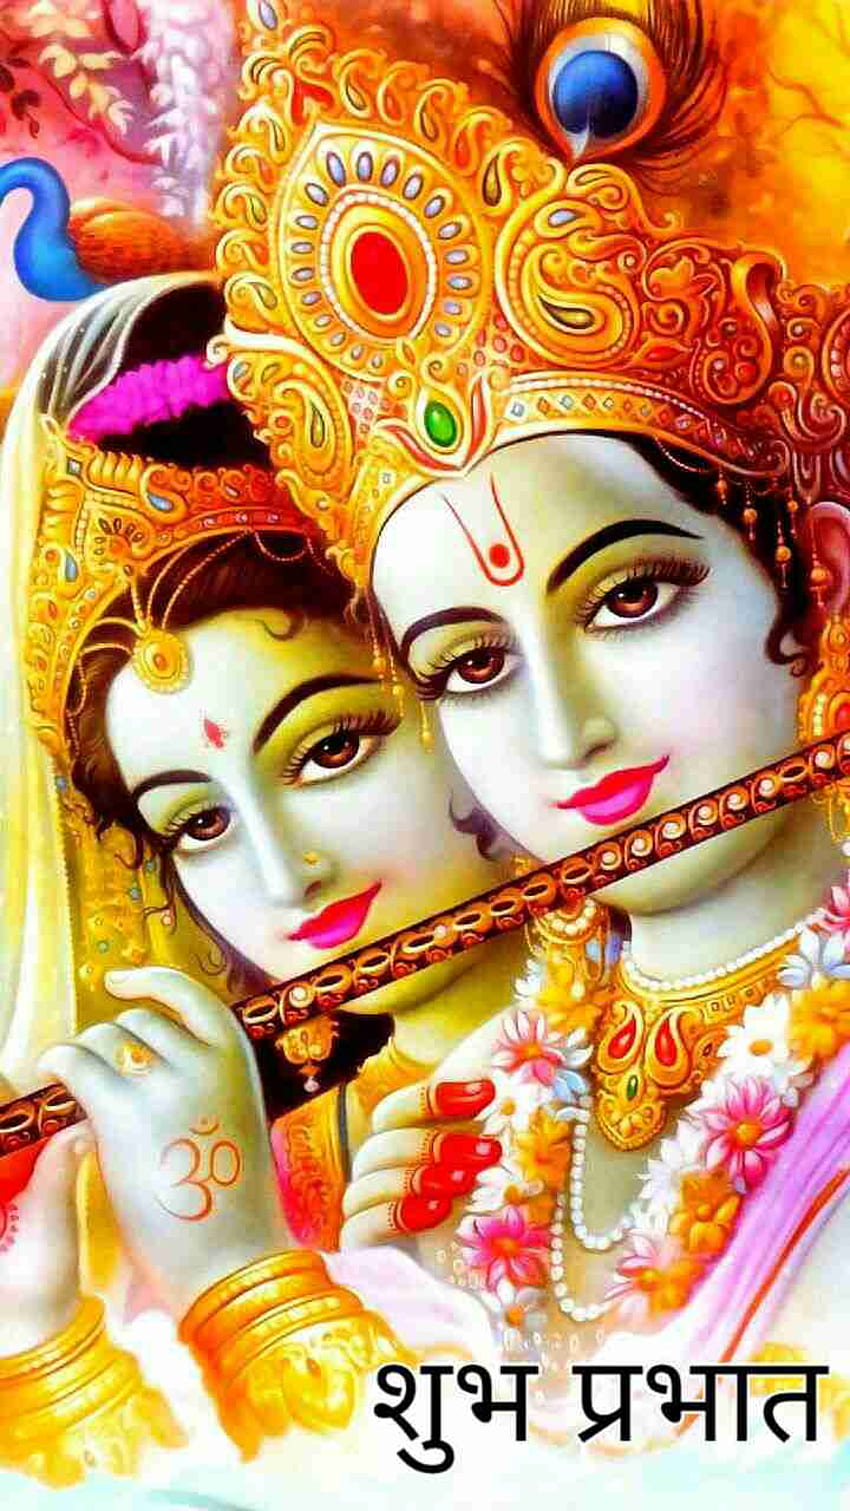 God Krishna Good Morning - Radha and Krishna, Lord Krishna and ...